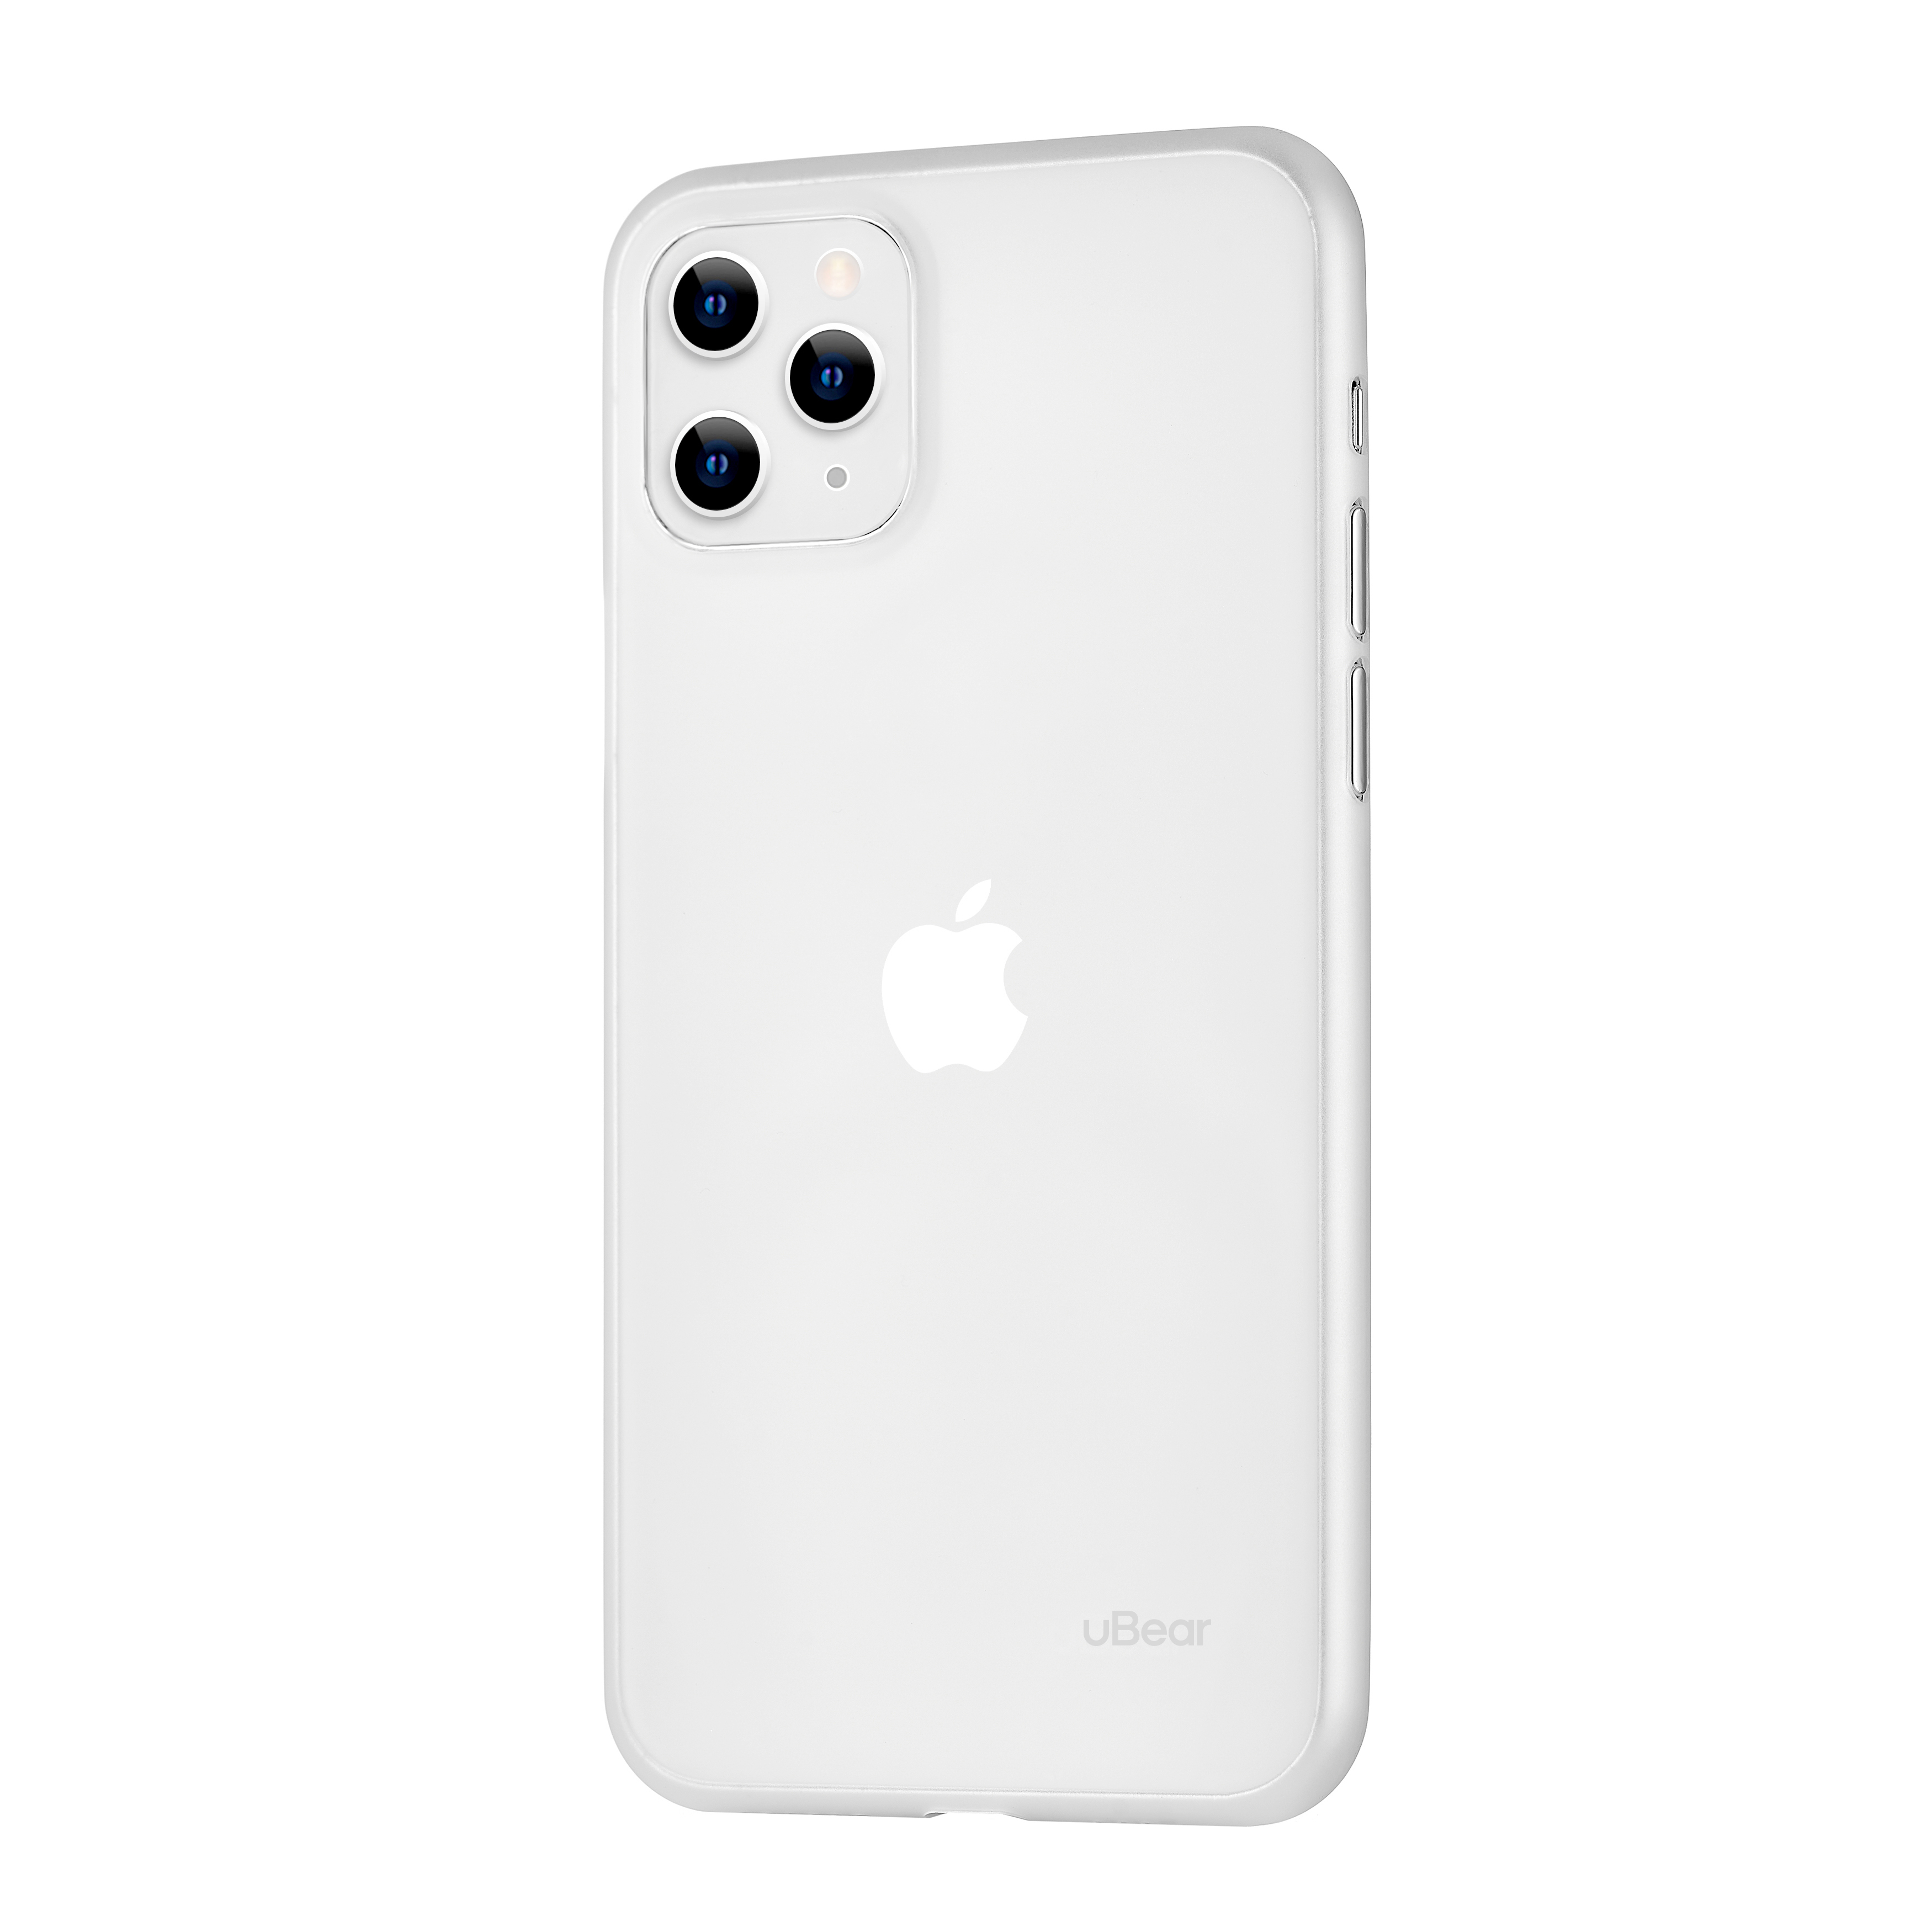 Ультратонкий 0,3мм чехол uBear для iPhone 11 Pro, полупрозрачный